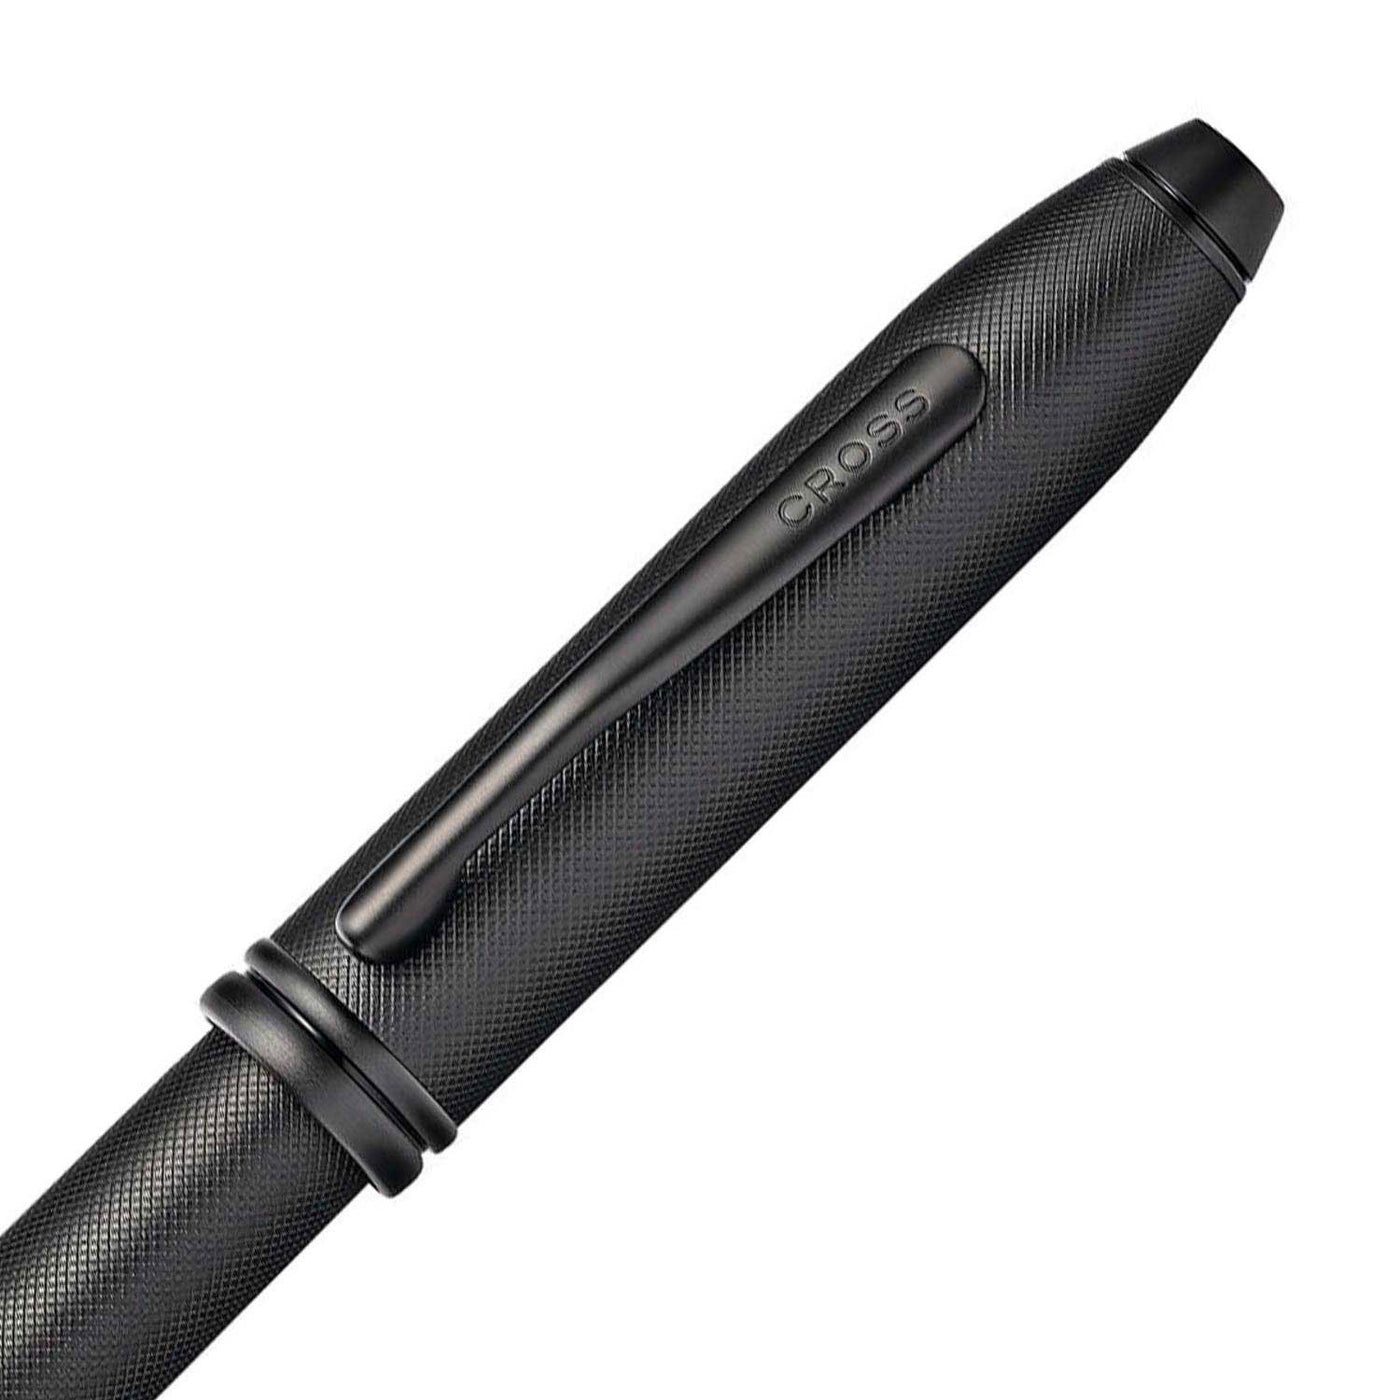 Cross Townsend Roller Ball Pen Textured Black 3